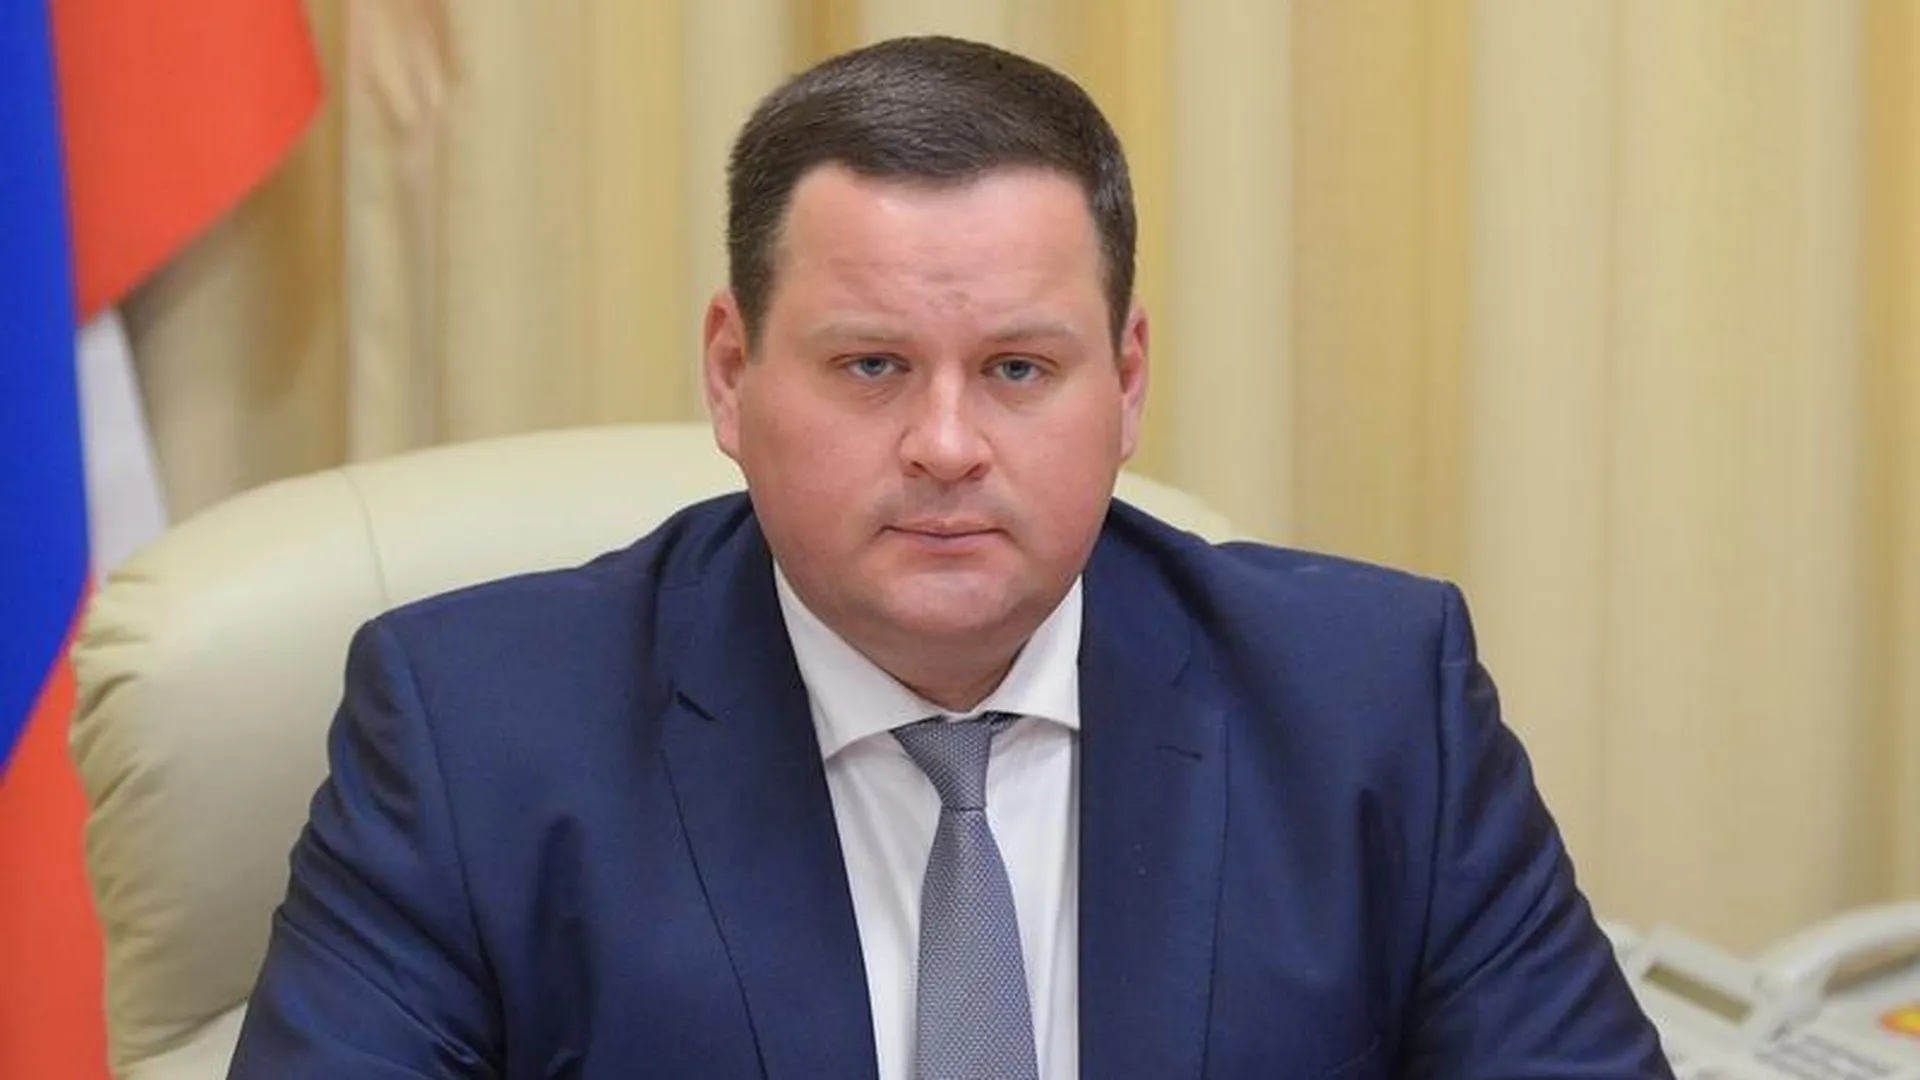 Госдолг бюджета Подмосковья один из самых низких по стране - министр